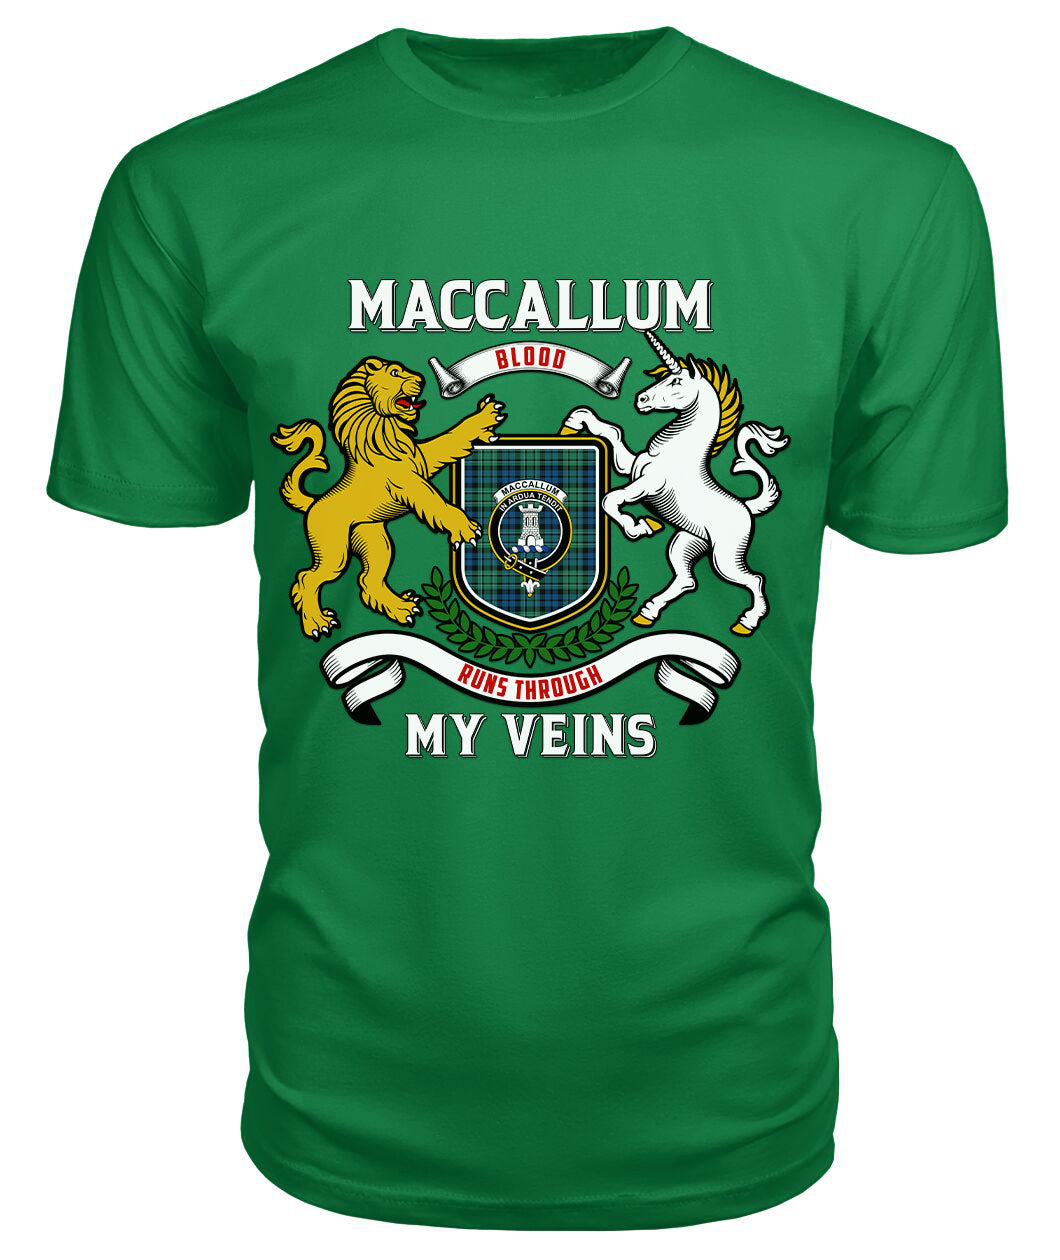 MacCallum Ancient Tartan Crest 2D T-shirt - Blood Runs Through My Veins Style